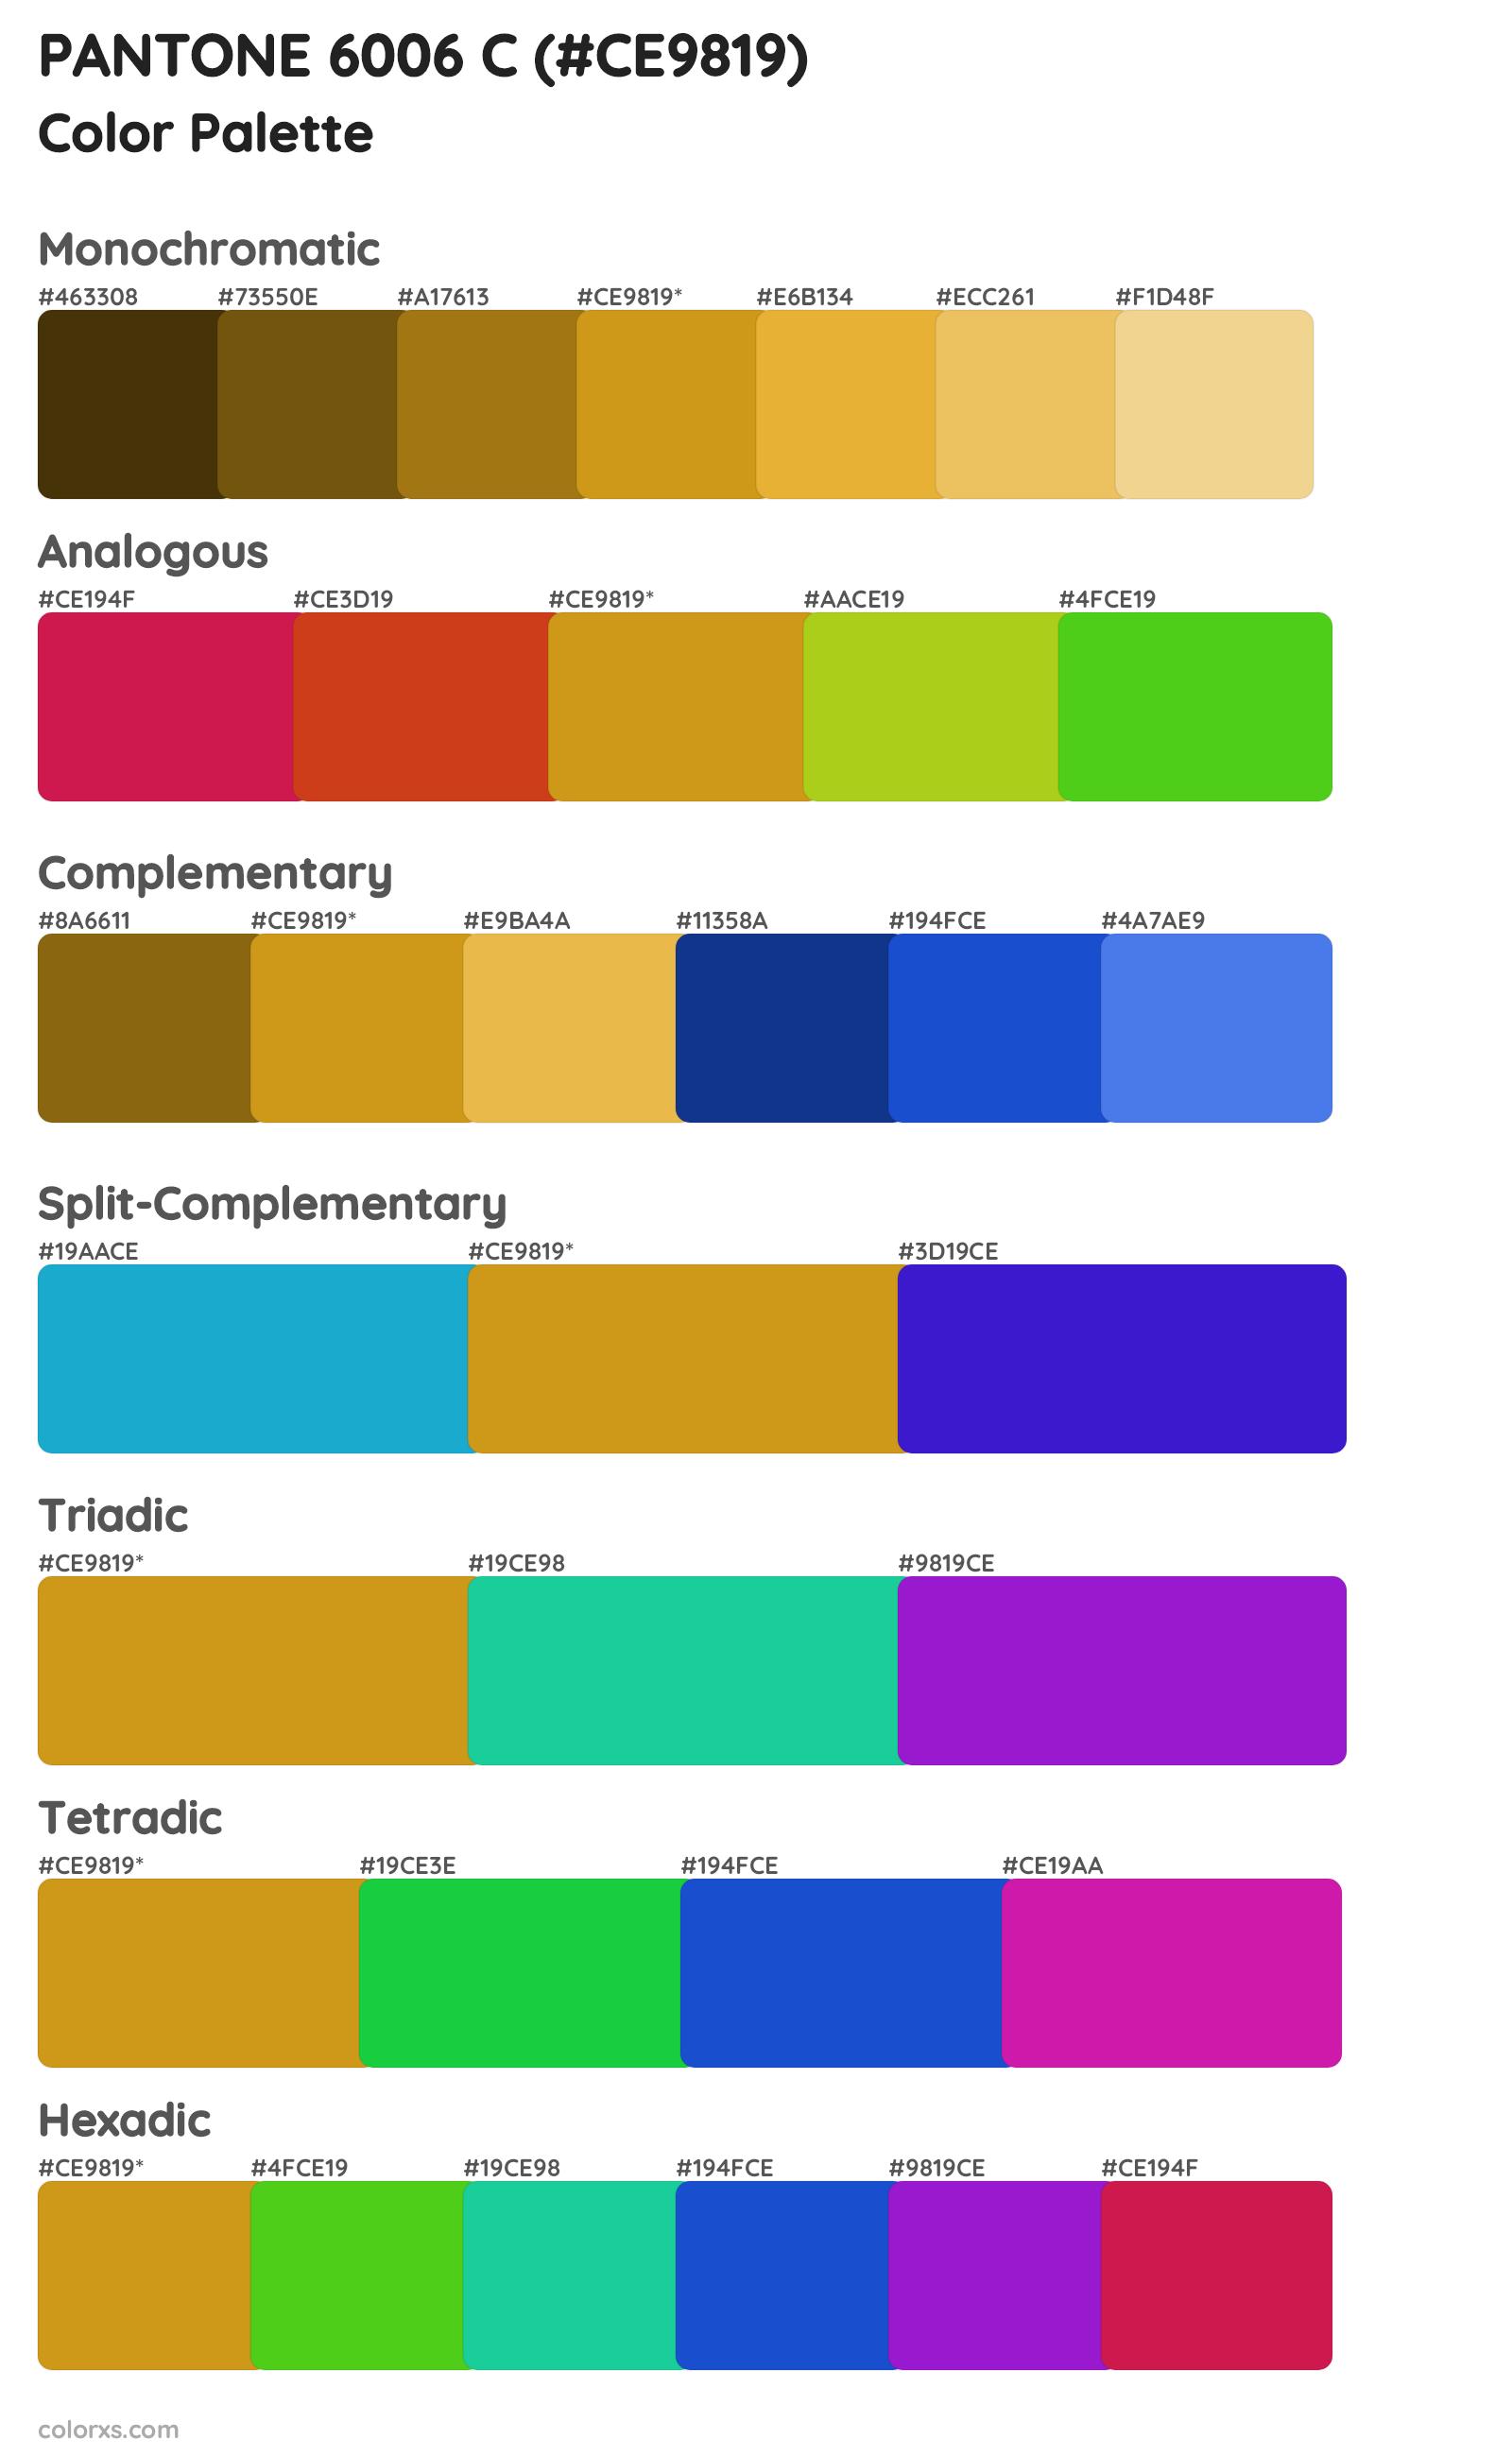 PANTONE 6006 C Color Scheme Palettes